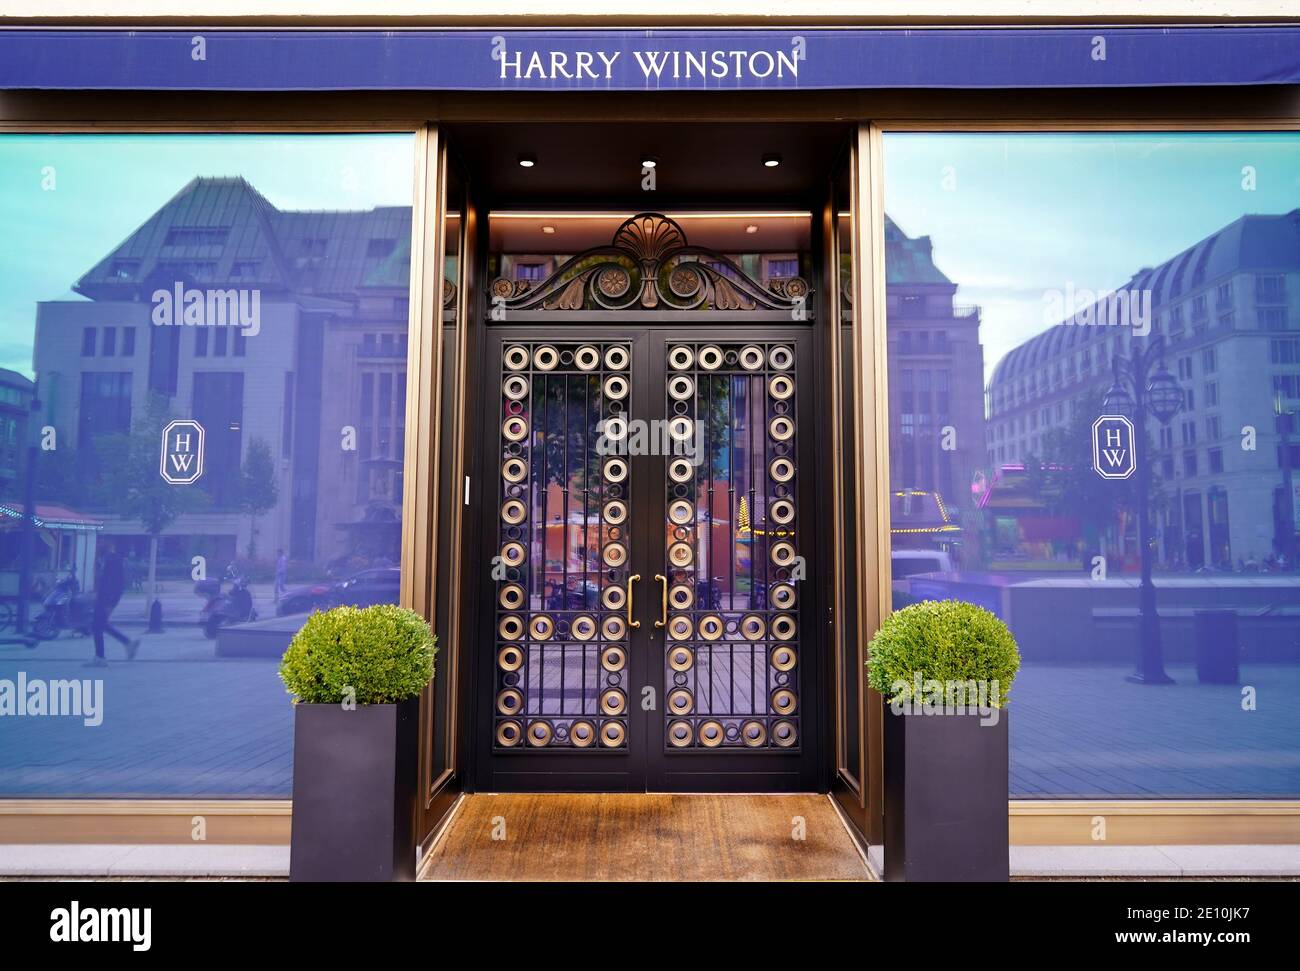 Vorderansicht des Harry Winston Stores in der Düsseldorfer Innenstadt. Harry Winston ist eine Schmuck- und Luxusuhren-Marke, die 1932 in New York gegründet wurde. Stockfoto